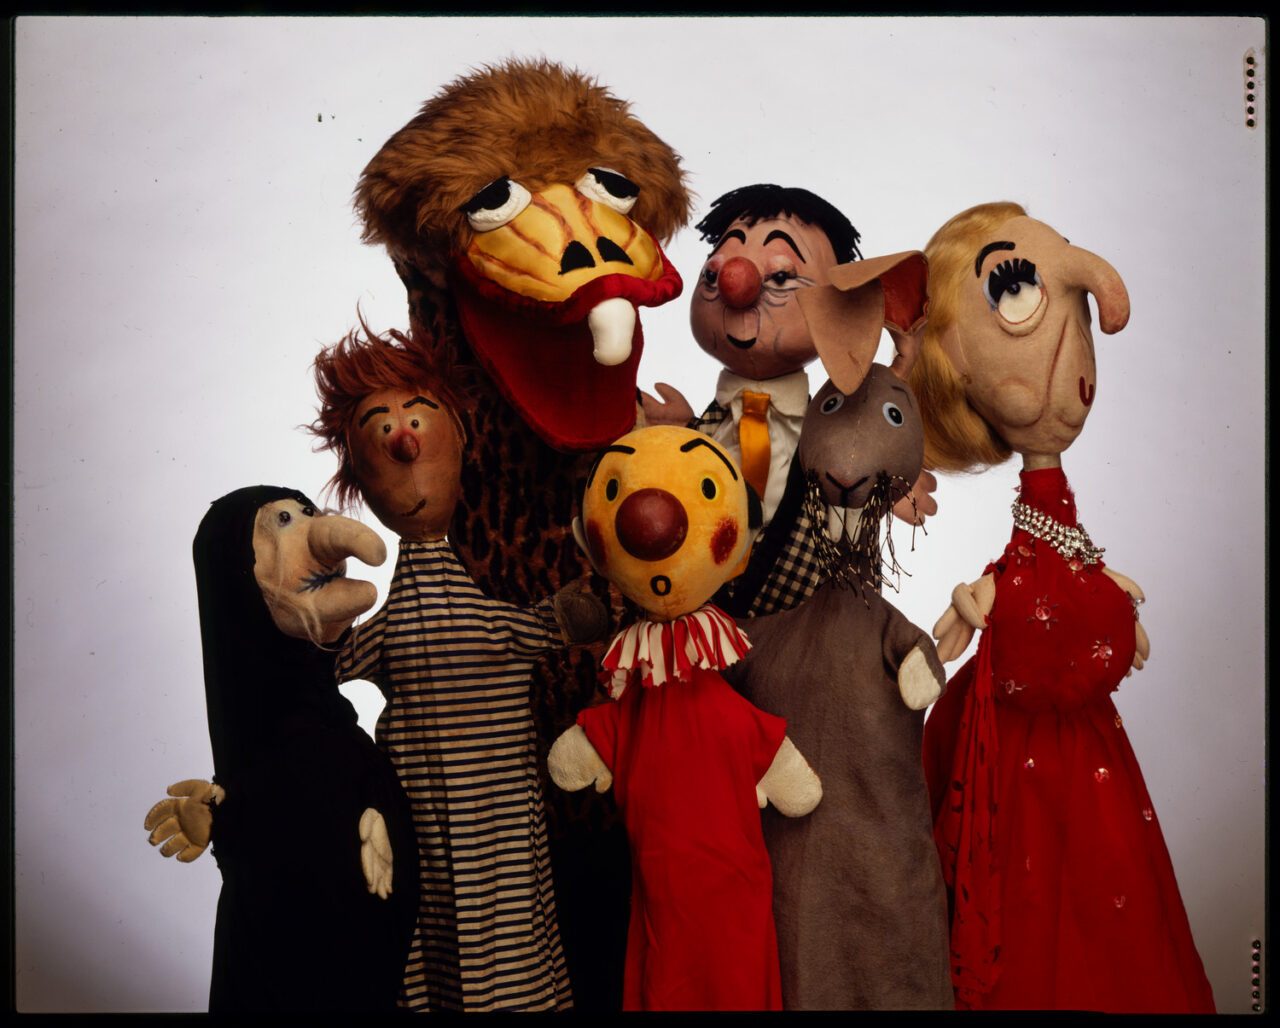 Kukla, Fran & Ollie puppets